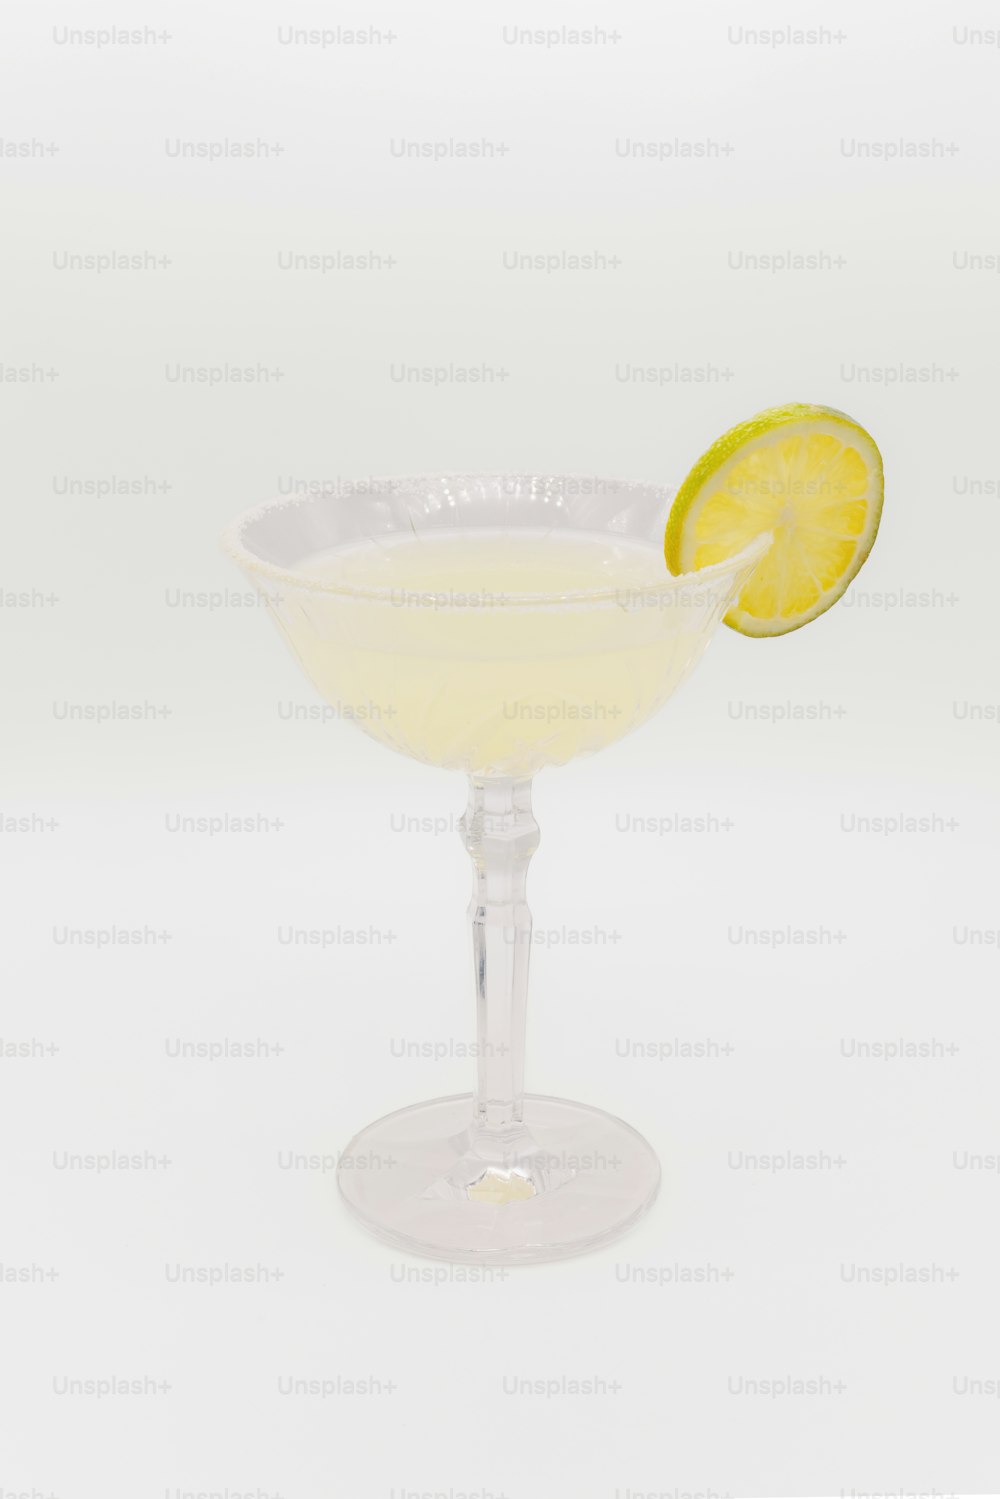 um copo com uma fatia de limão por cima